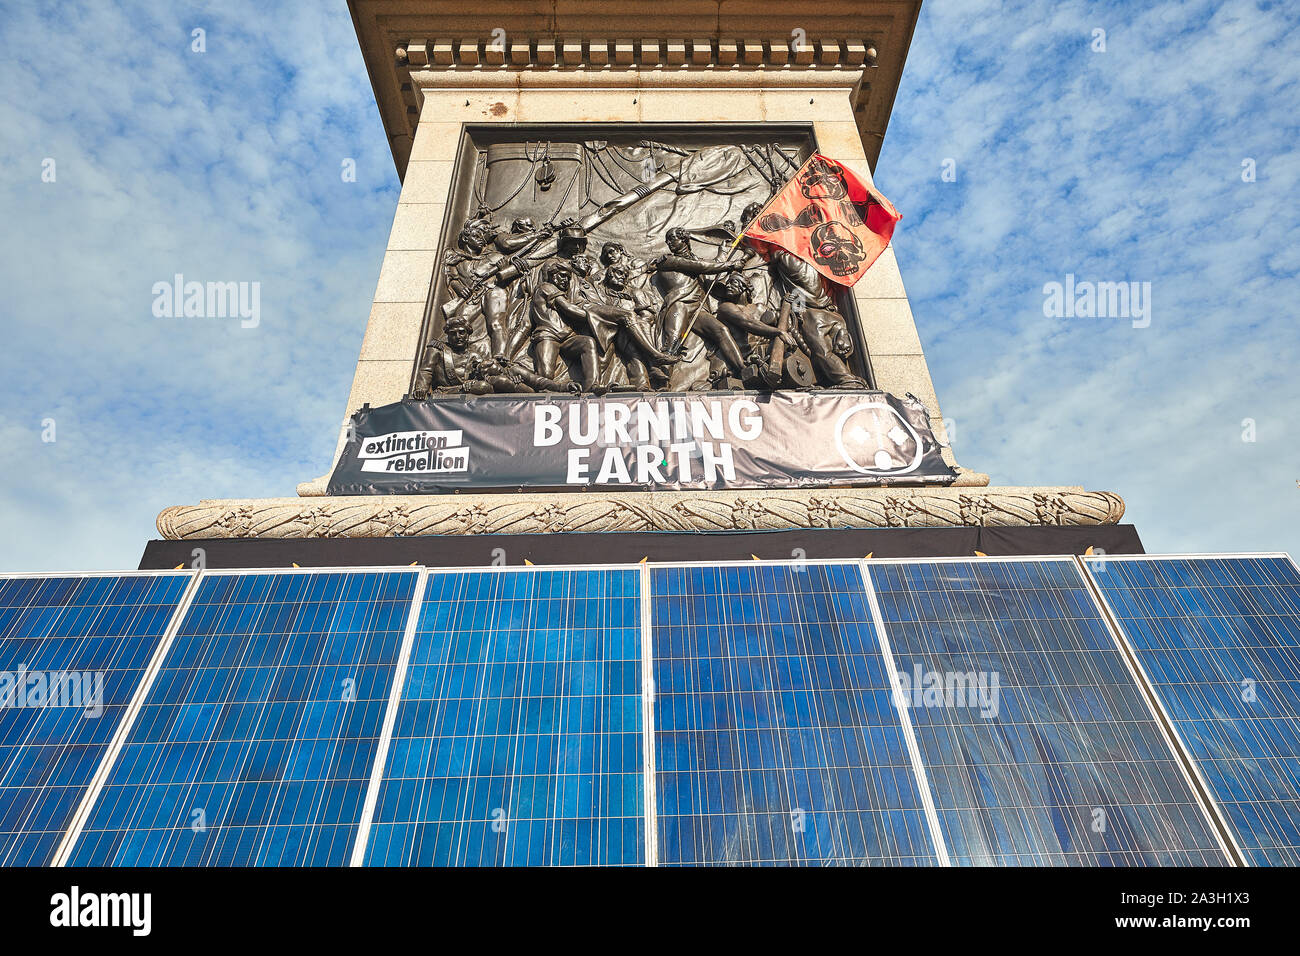 Londres, Reino Unido - Oct 8, 2019: paneles solares, erigido en la parte delantera de la columna de Nelson por activistas de extinción Rebelión en el segundo día de una ocupación de Trafalgar Square. Foto de stock